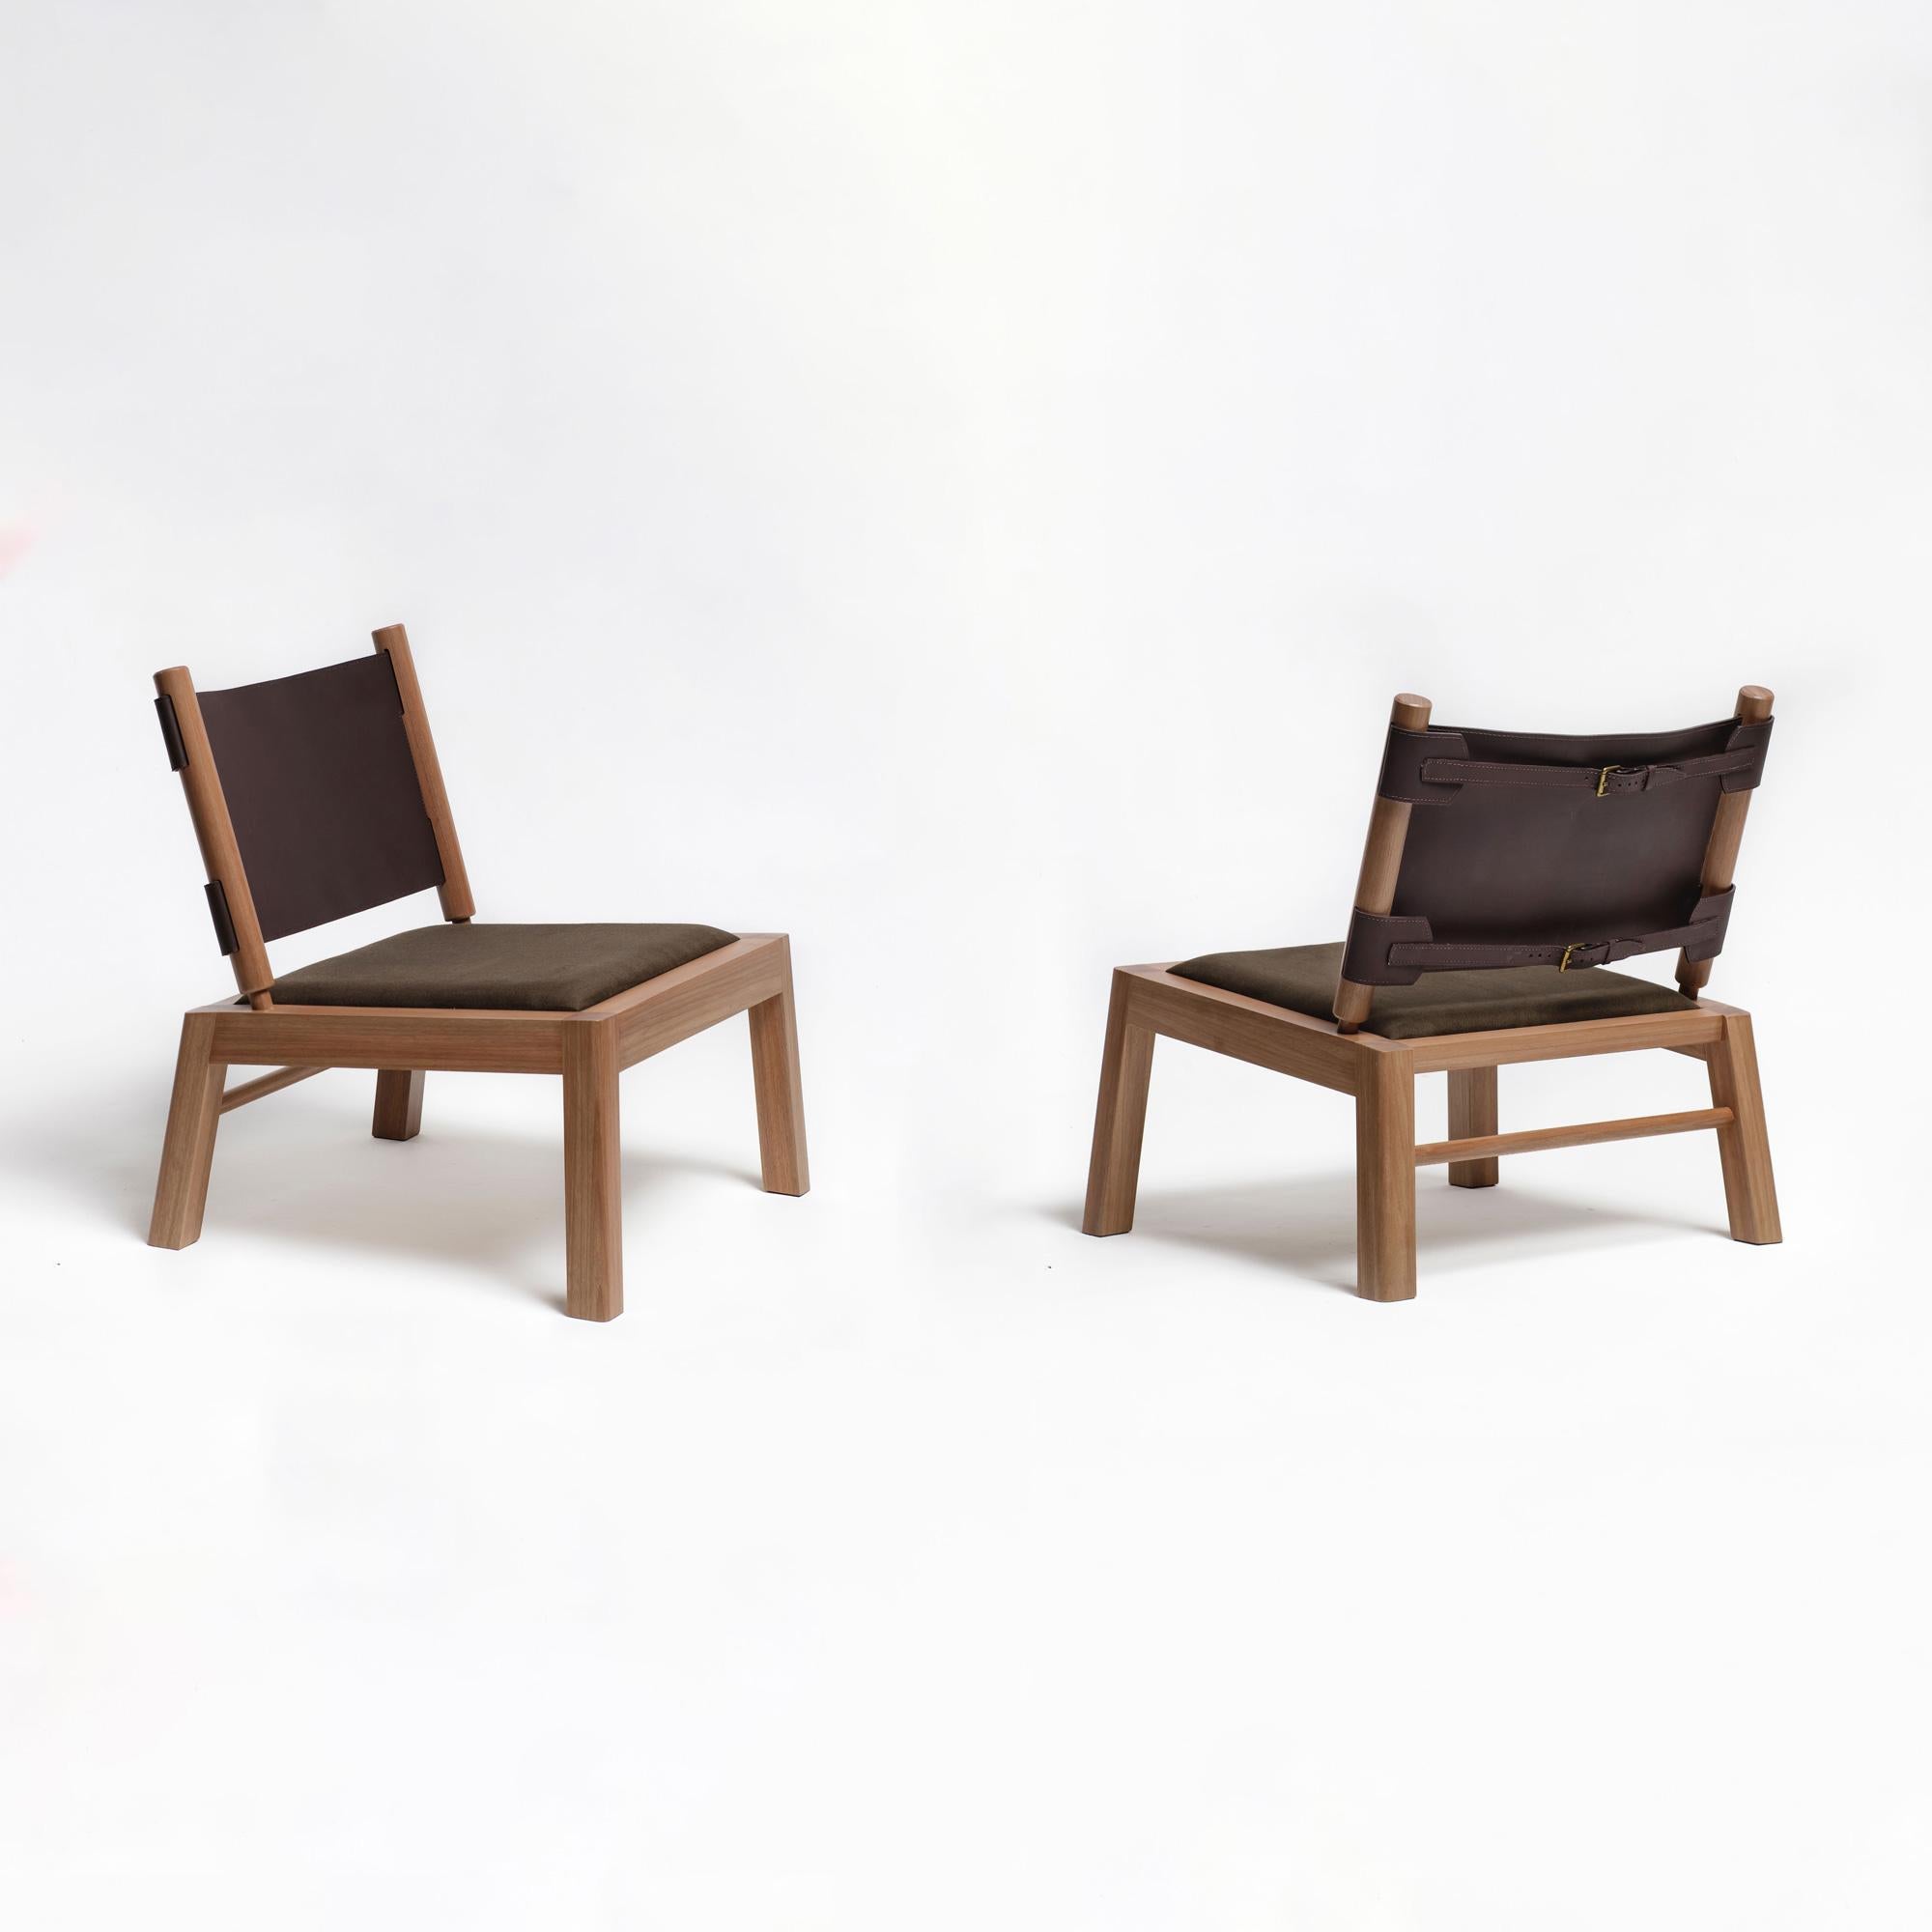 2er-Set Oulipo Lounge-Stühle. Oulipo ist ein zeitgenössischer Loungesessel, handgefertigt aus zertifiziertem brasilianischem Hartholz 